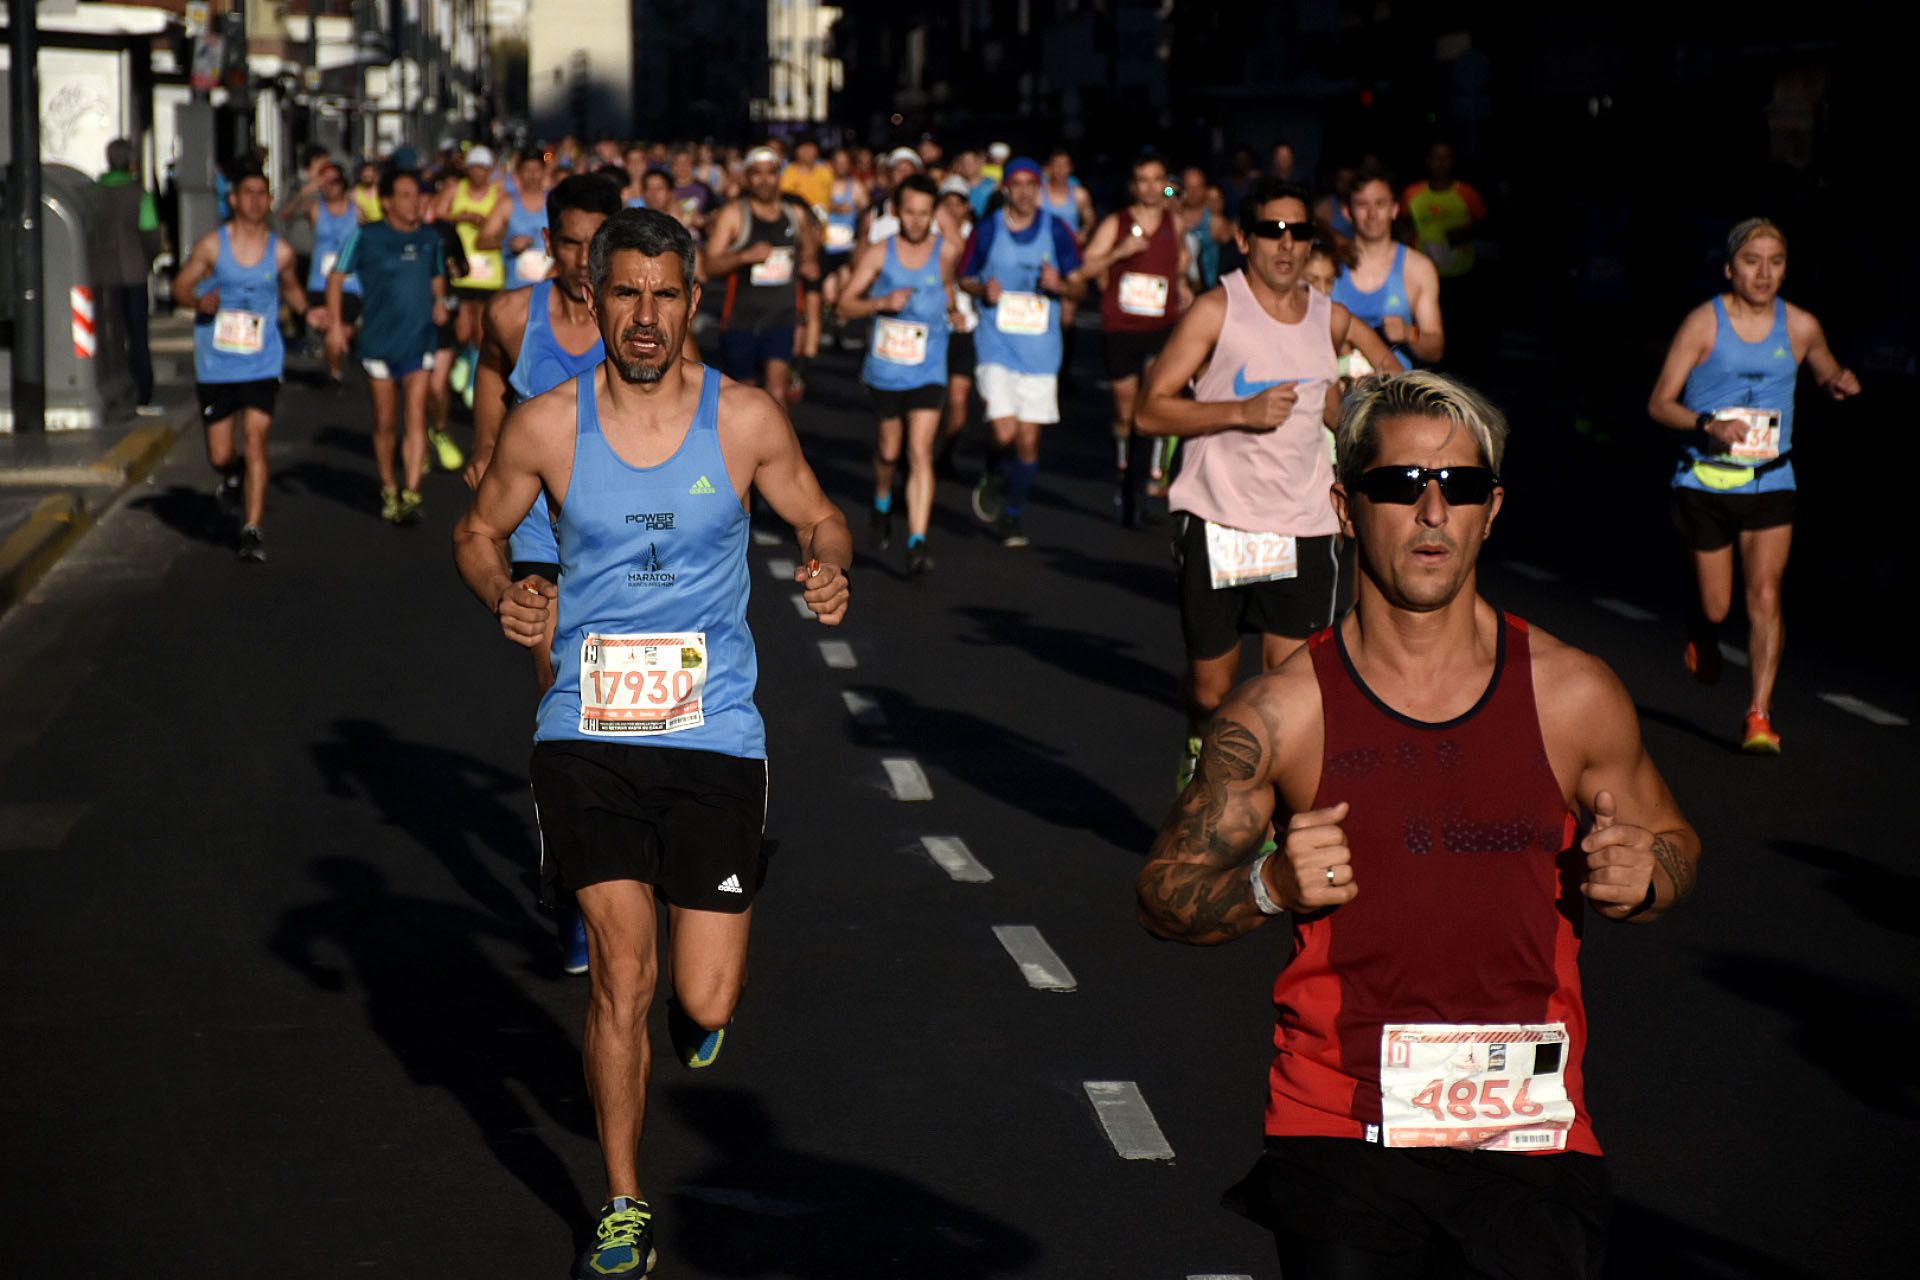 La mayoría de los participantes corrieron con la indumentaria oficial de la maratón